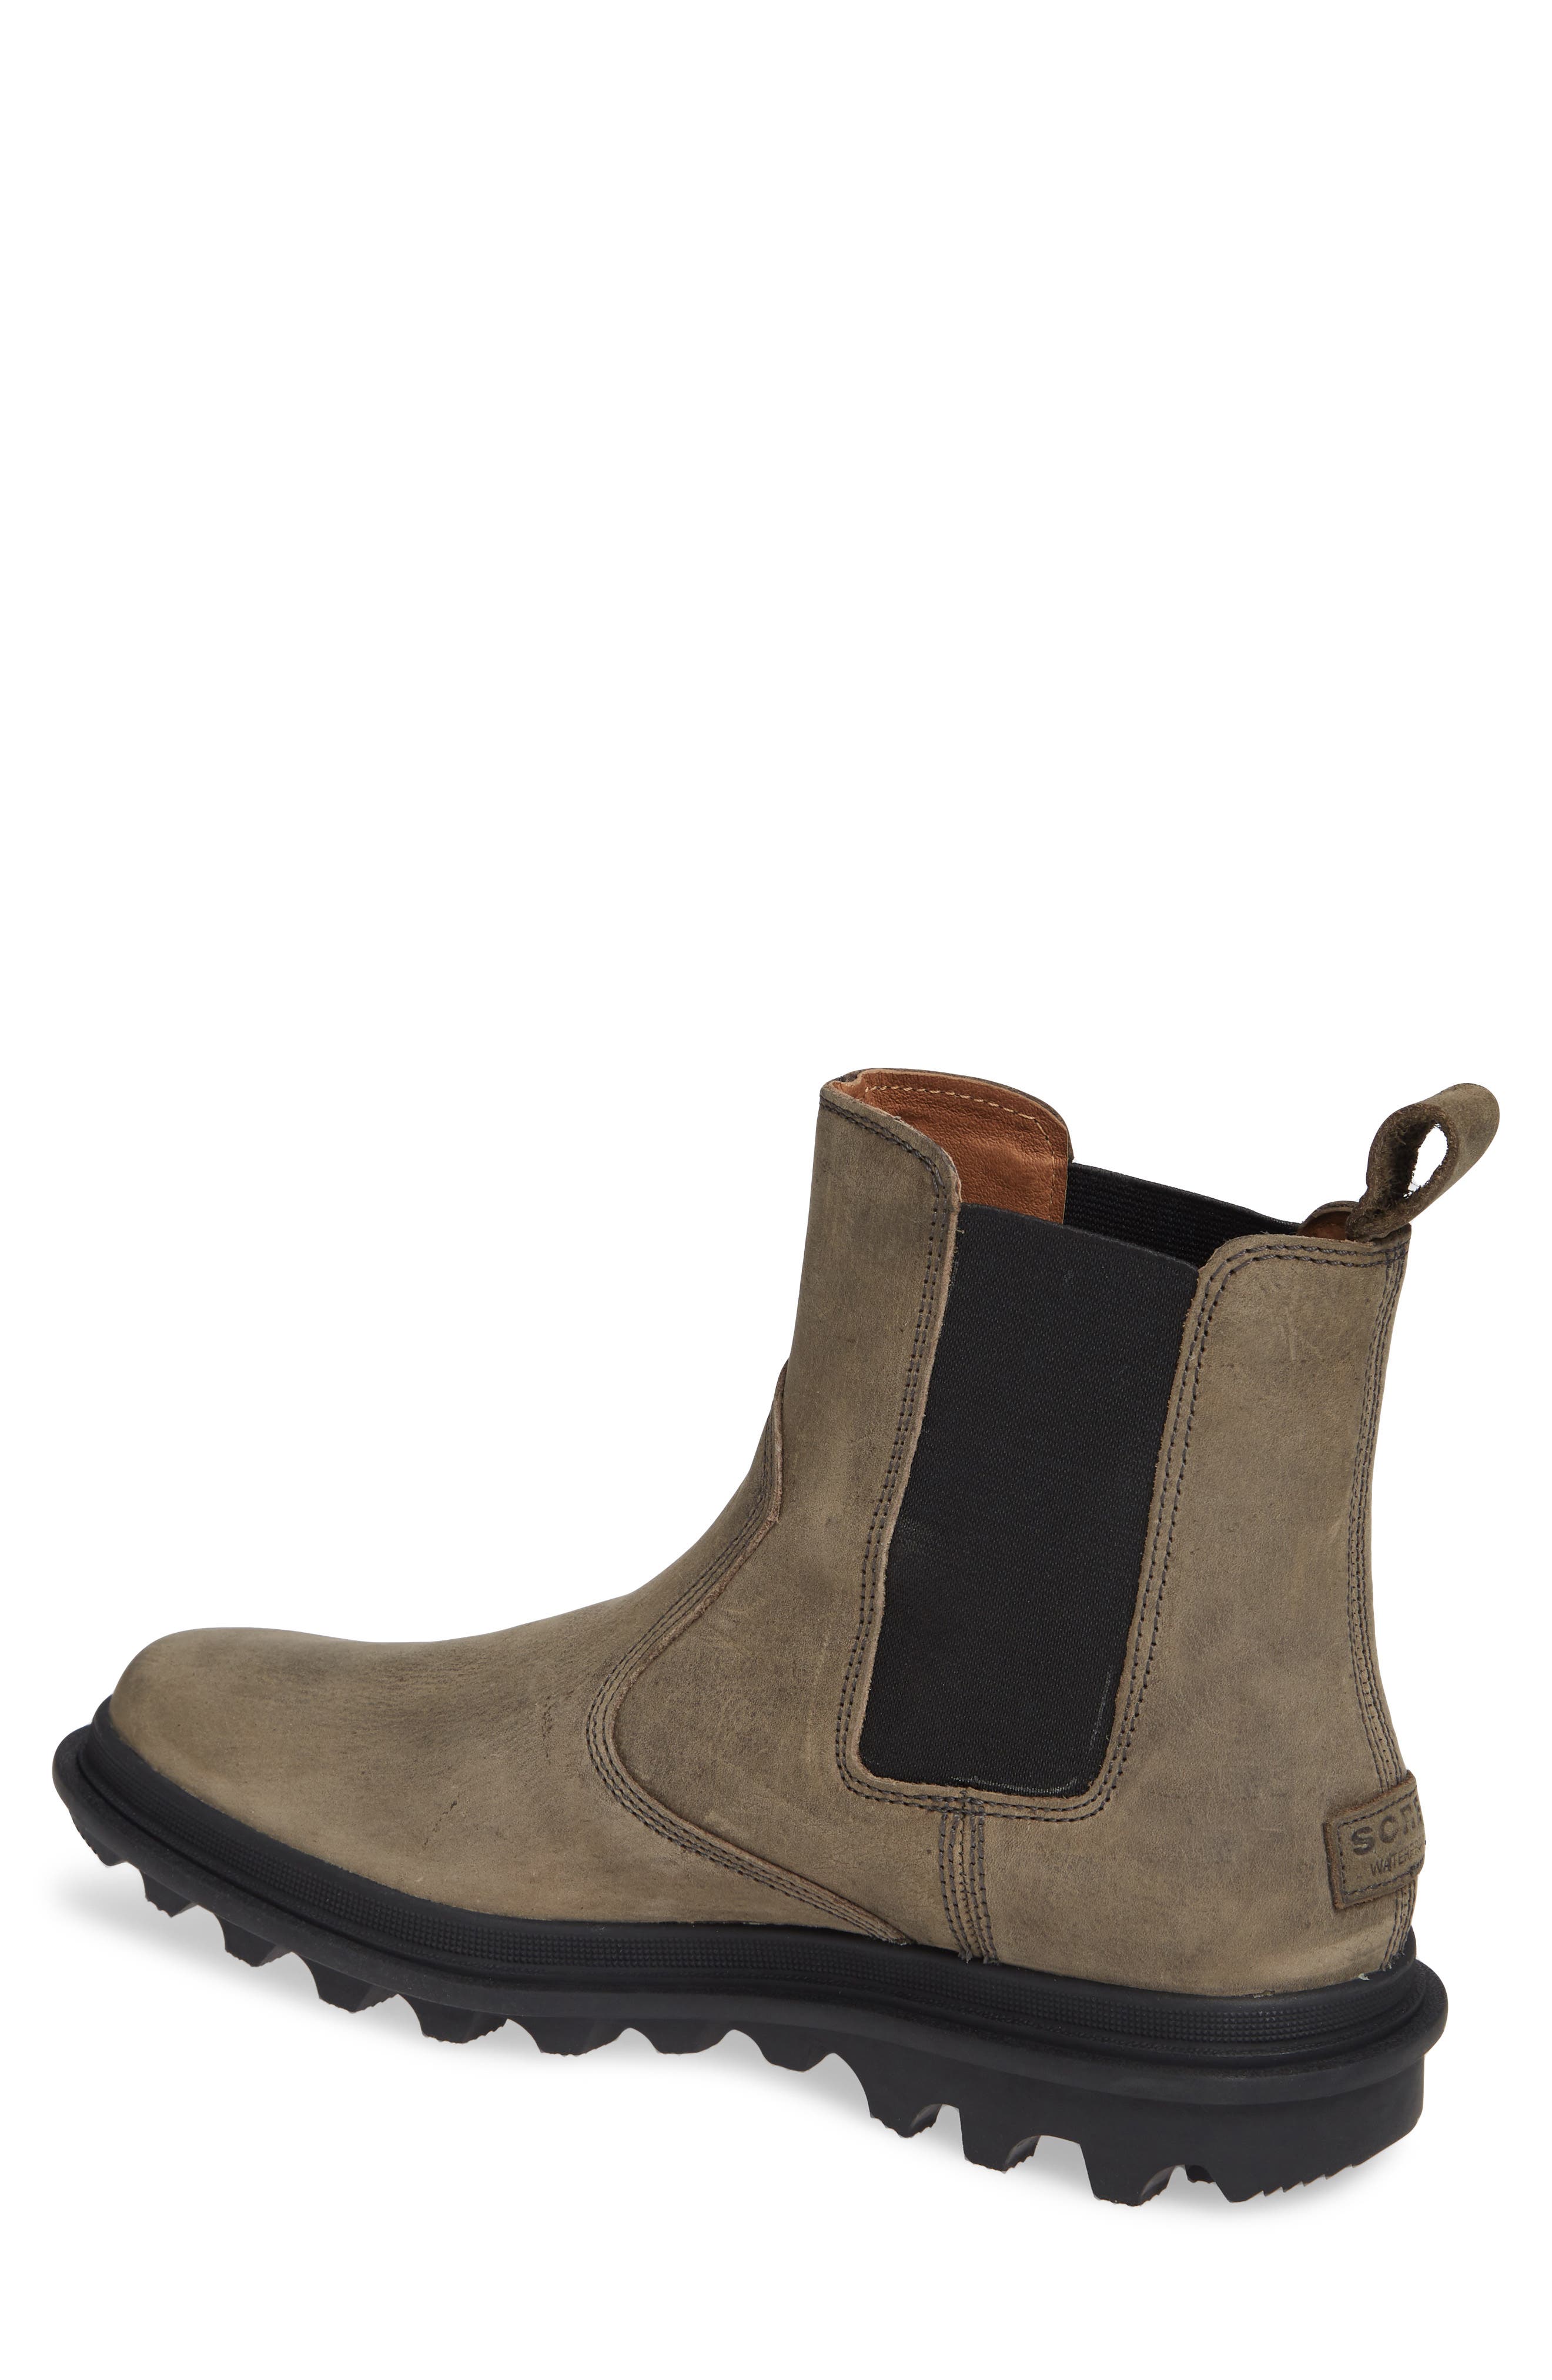 sorel men's ace chelsea waterproof boots